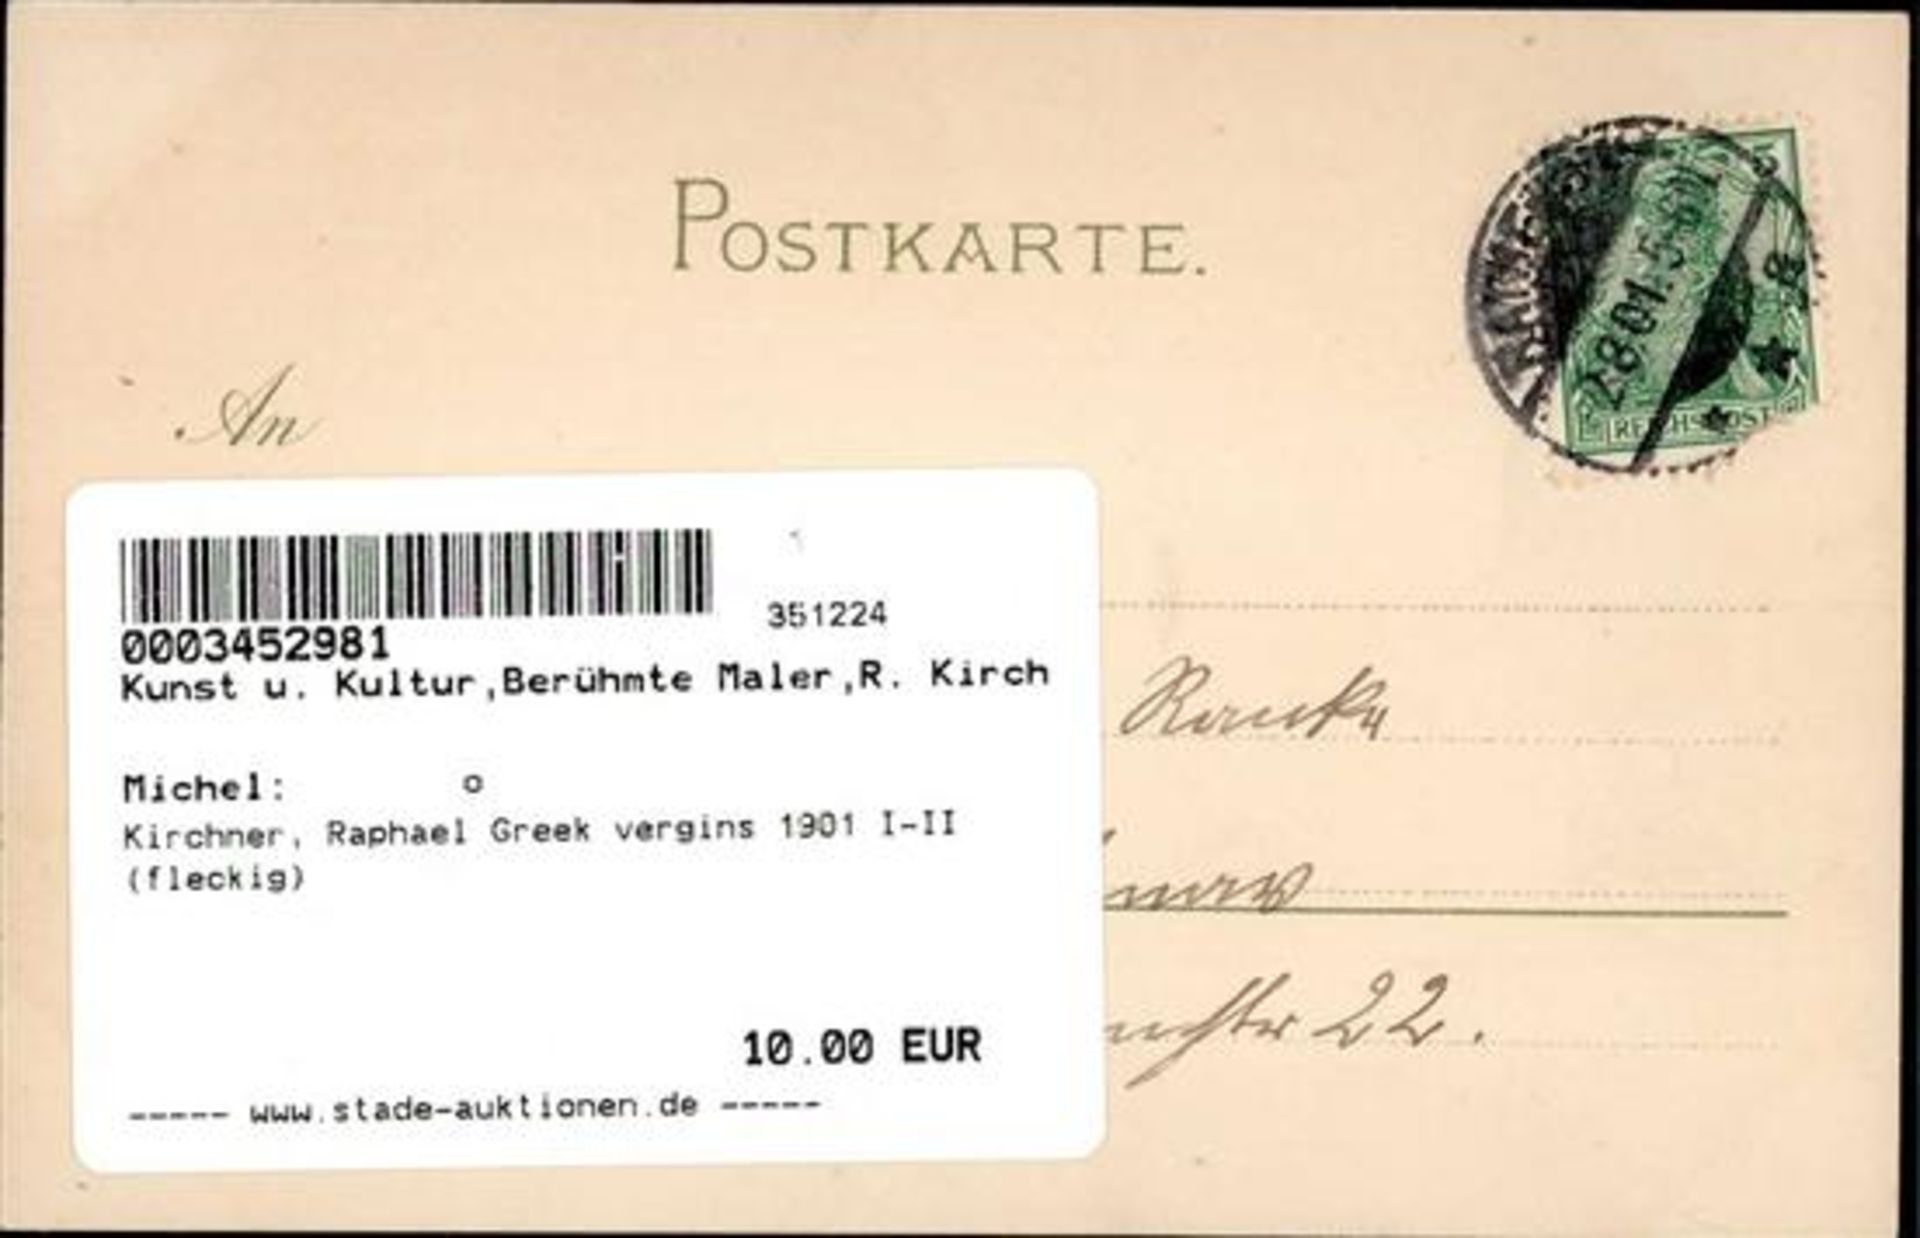 Kirchner, Raphael Greek vergins 1901 I-II (fleckig) - Bild 2 aus 2